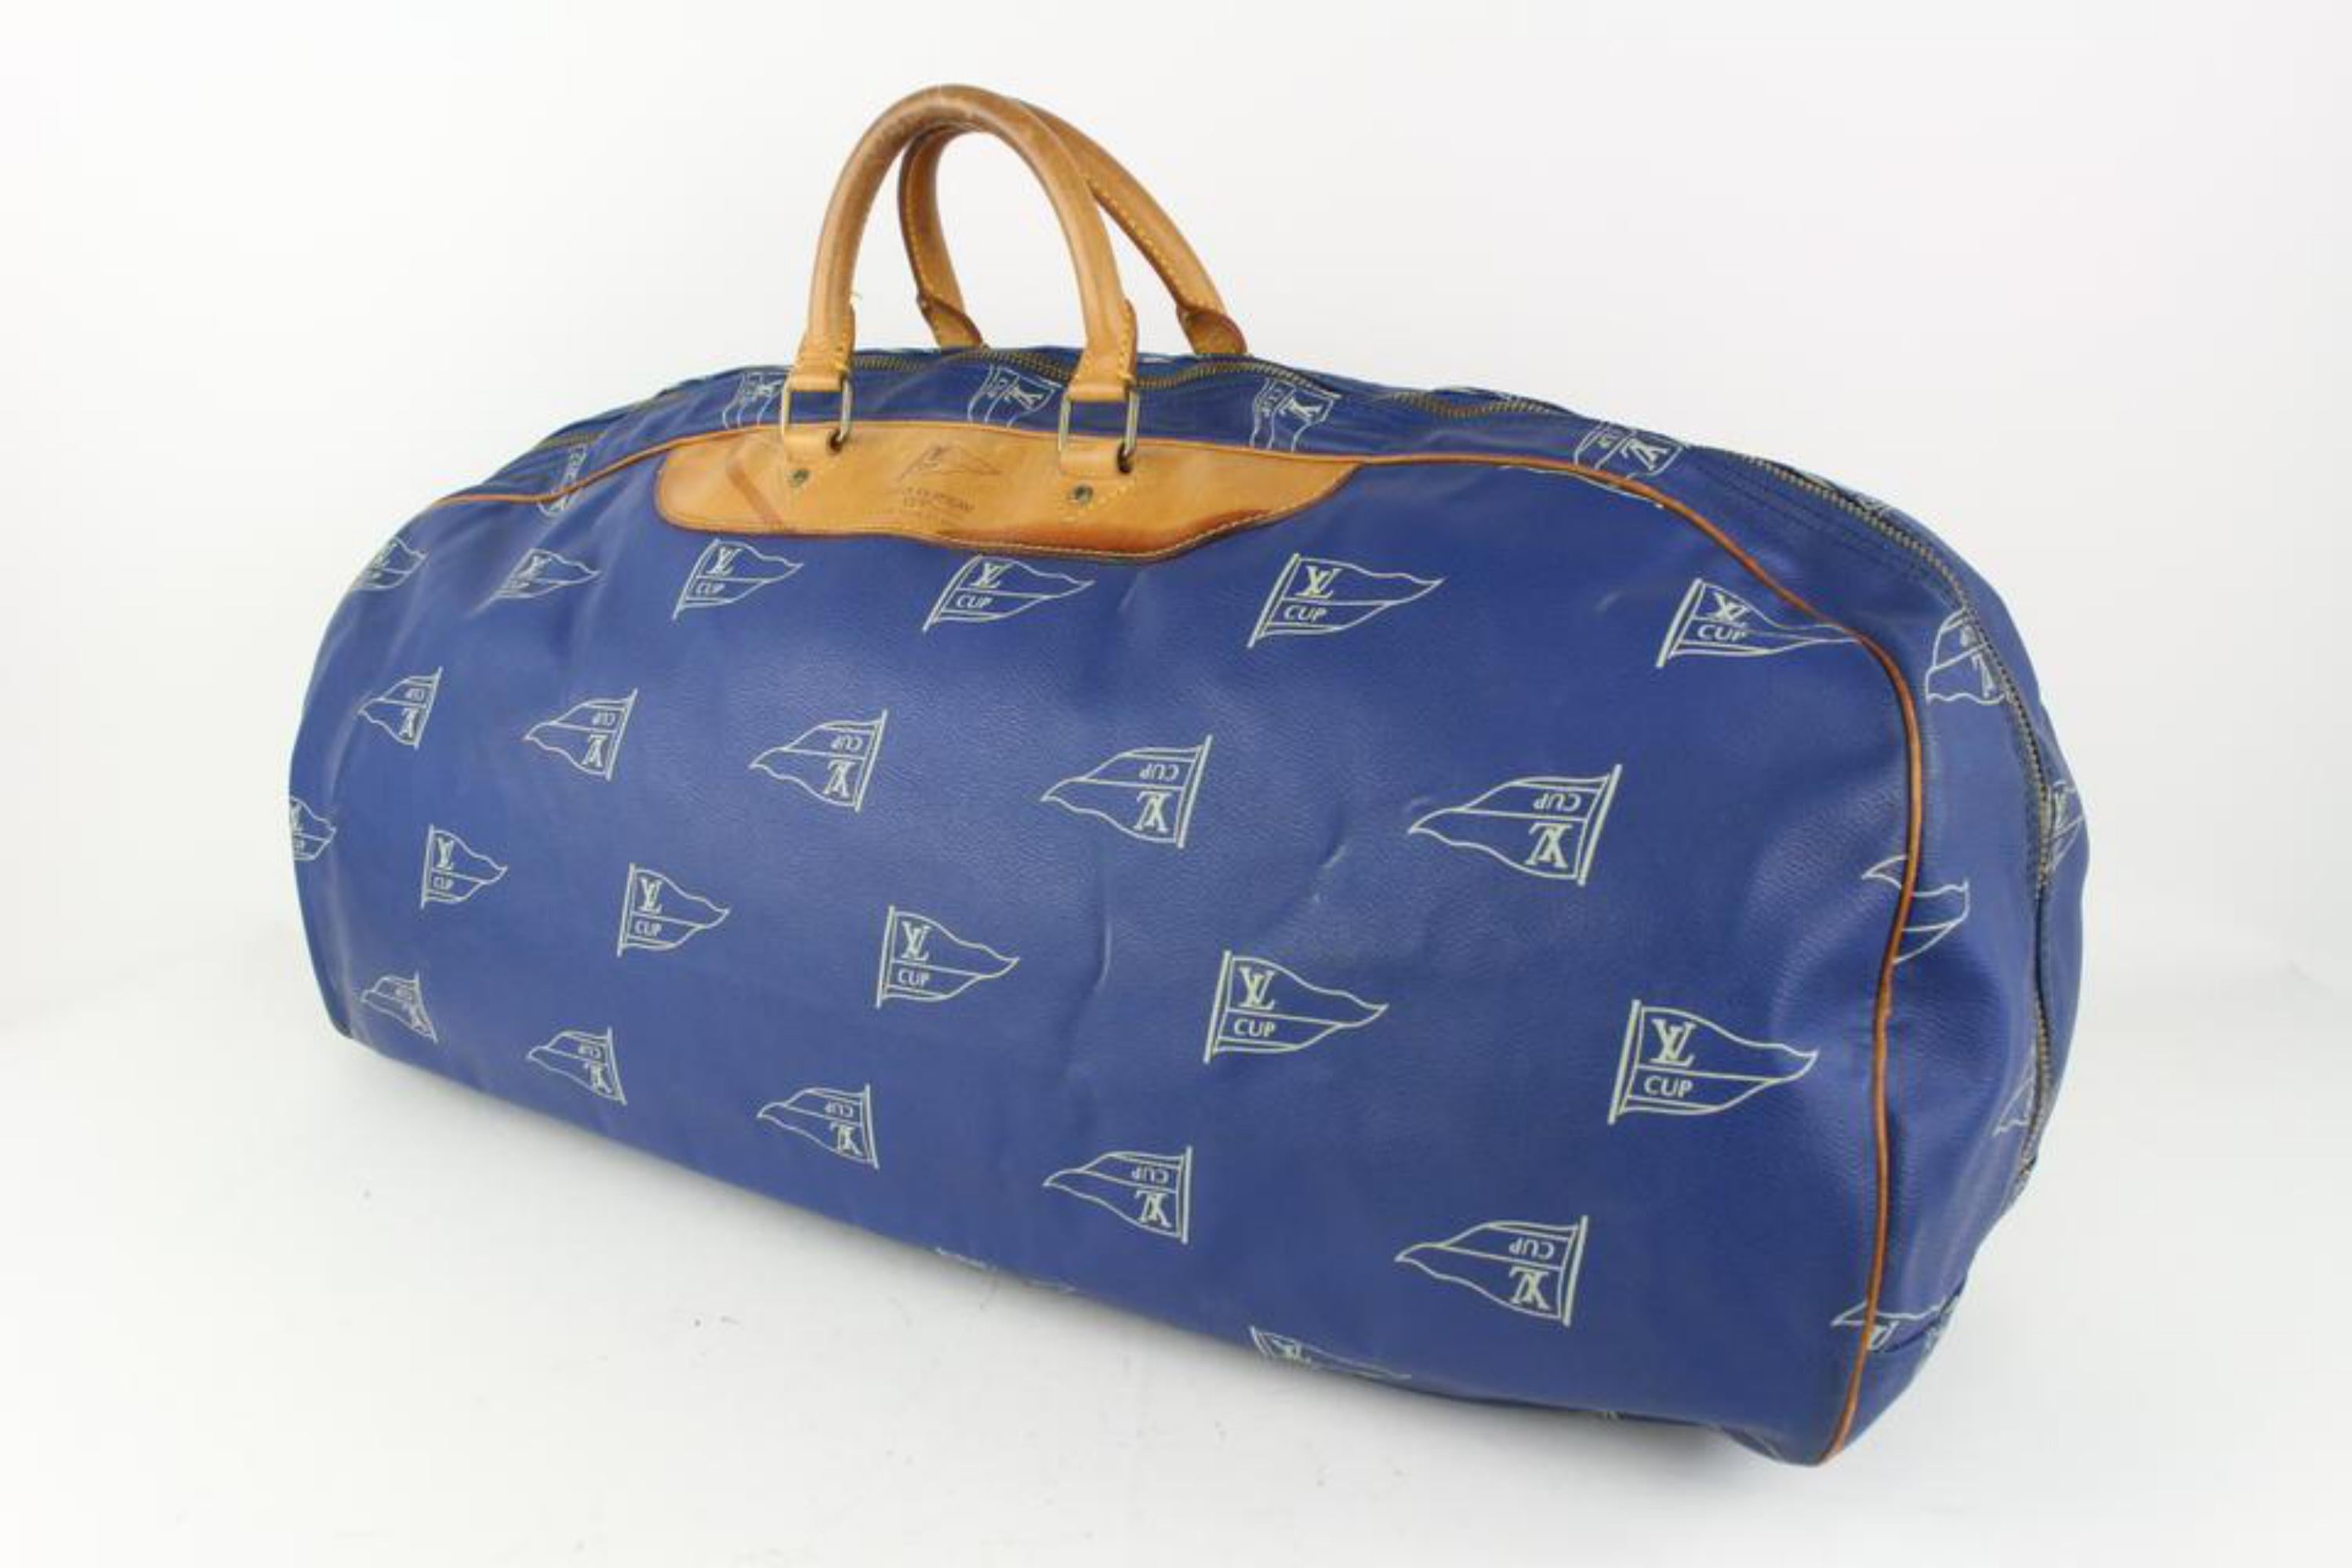 Louis Vuitton Blue LV Cup Sac Plein Air Long Keepall Bag 1015lv43 For Sale 5